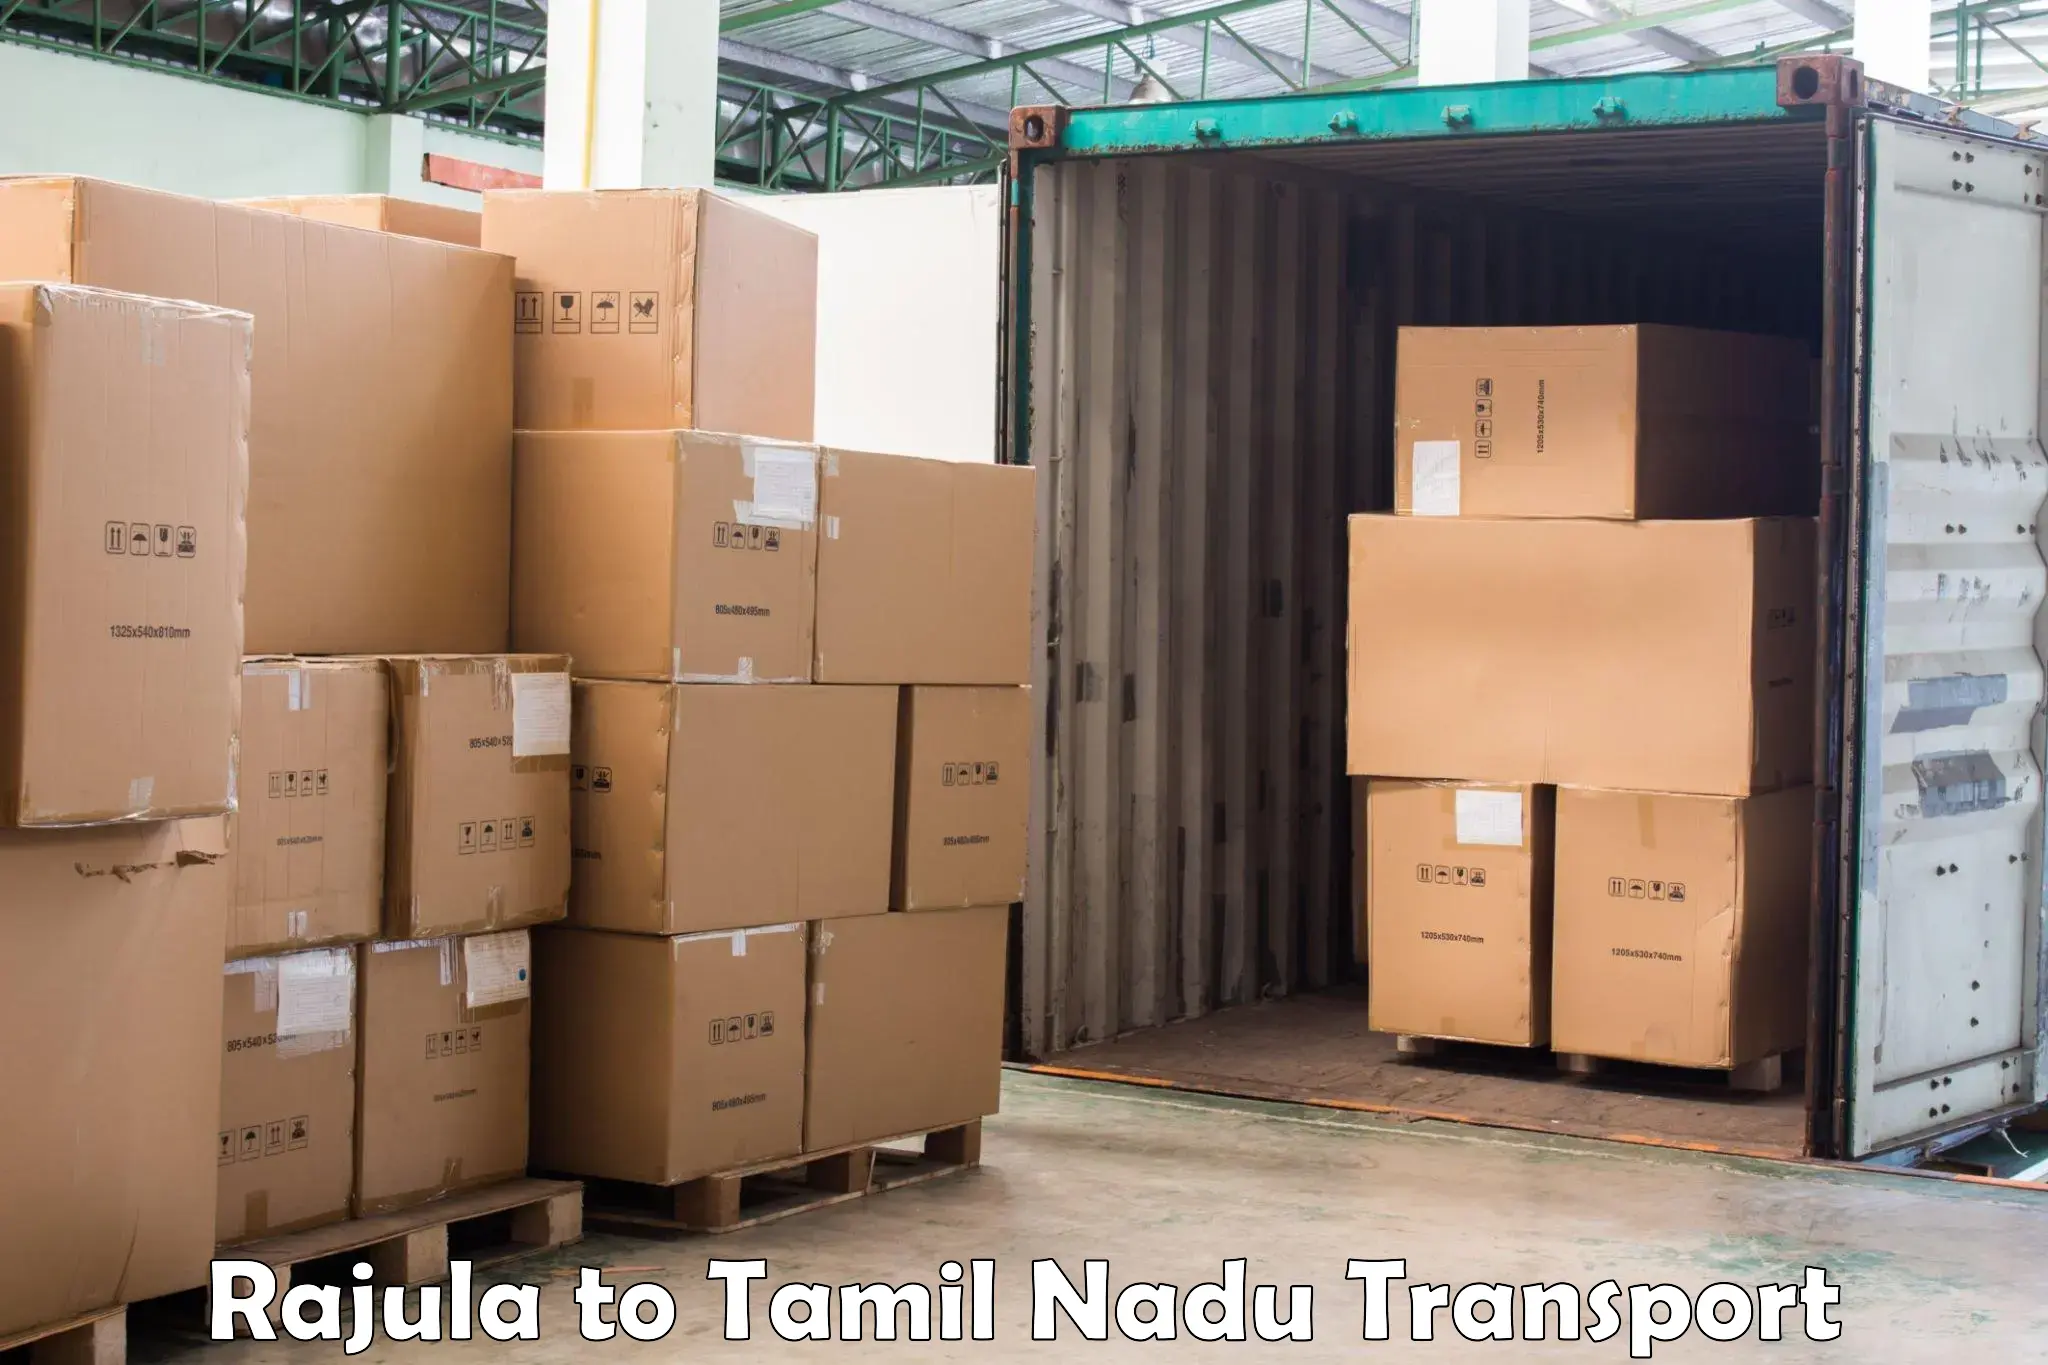 Nearest transport service in Rajula to Tiruturaipundi